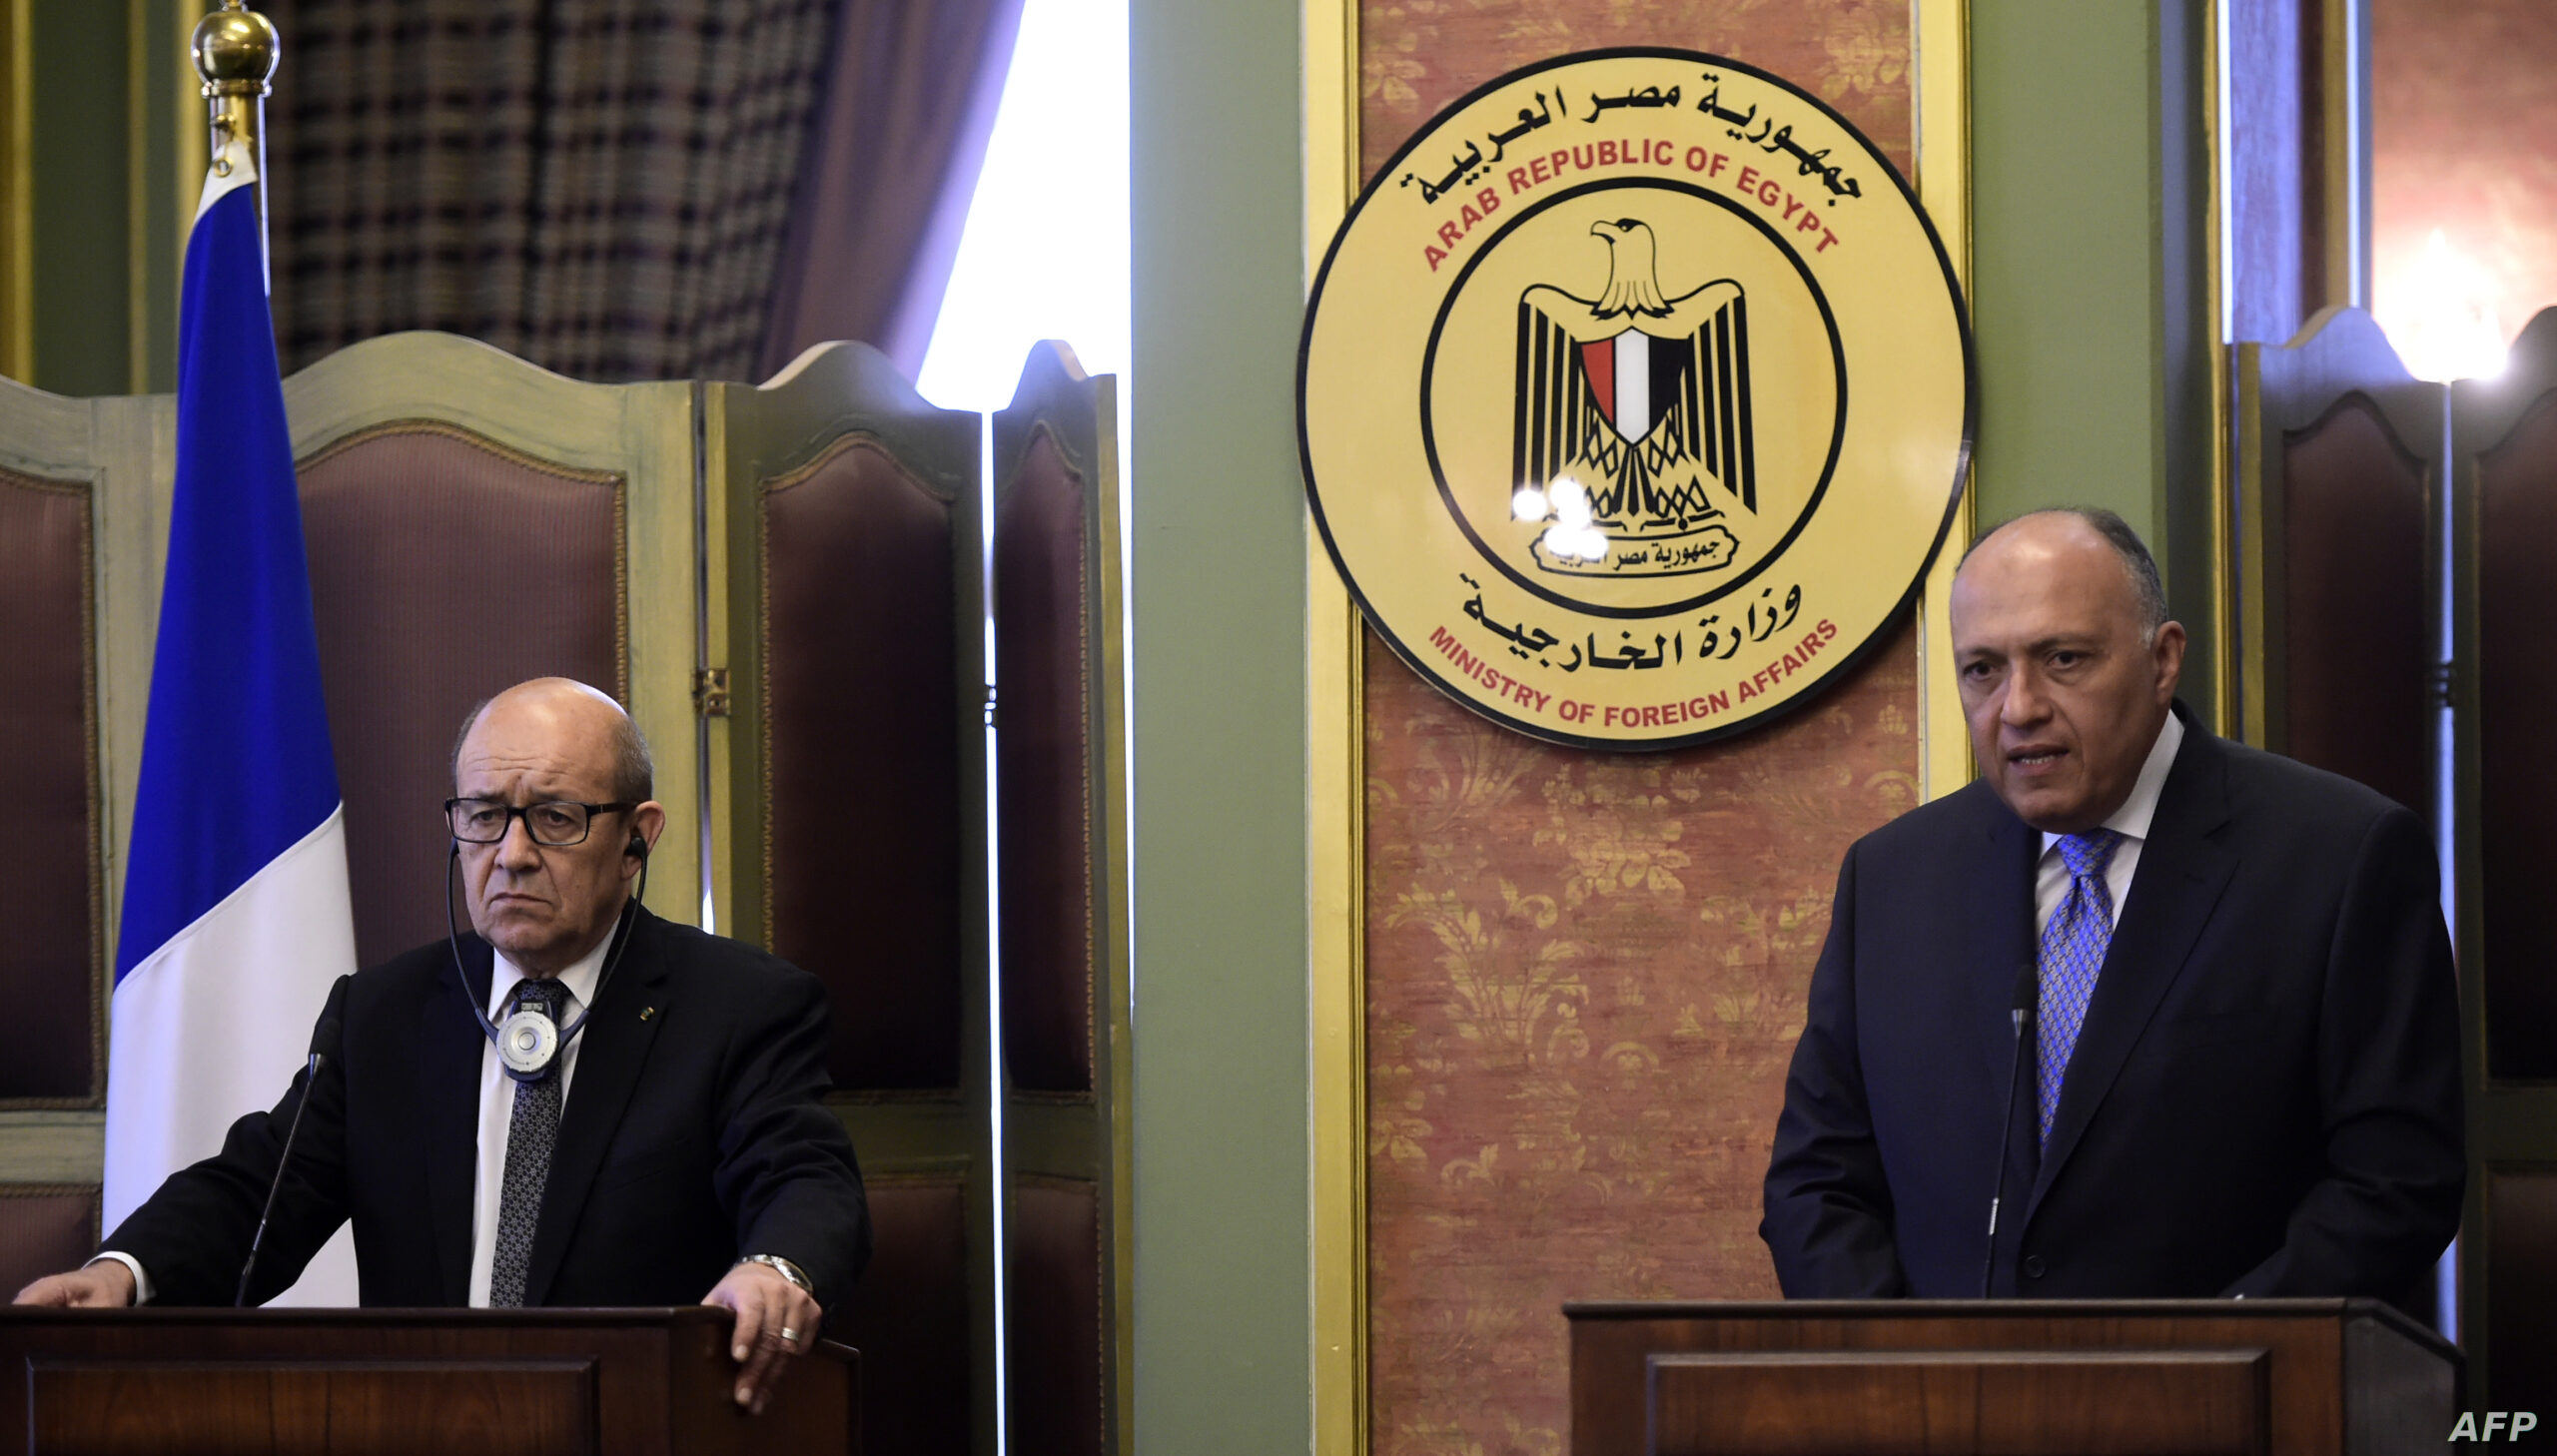 فرنسا ومصر: لدينا توافق في الرؤى بشأن لييبا